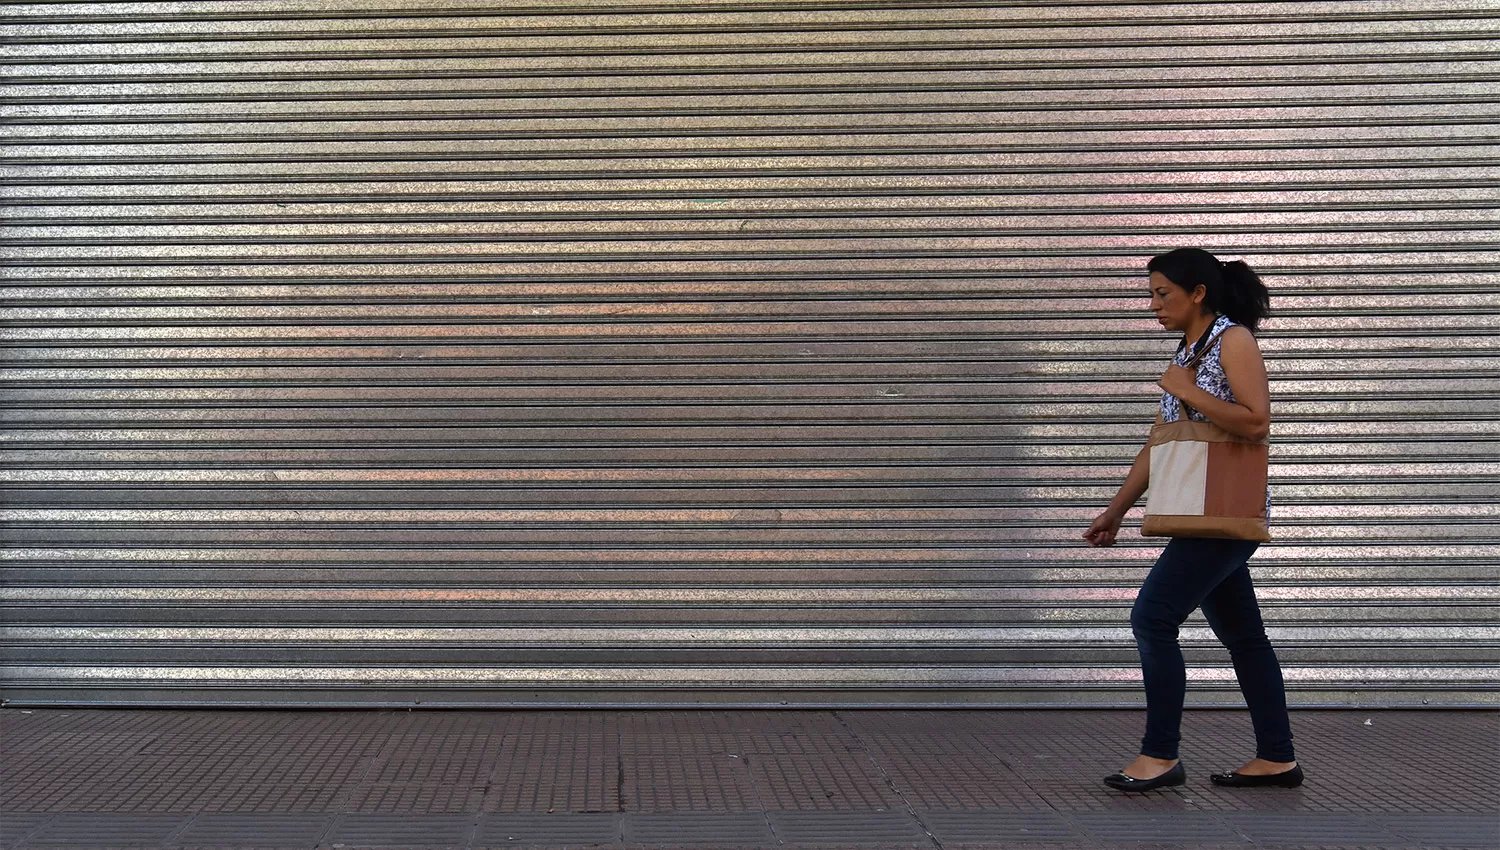 PERSIANAS ABAJO. Los comercios abrirán sus puertas recién mañana. LA GACETA / FOTO DE ANALÍA JARAMILLO